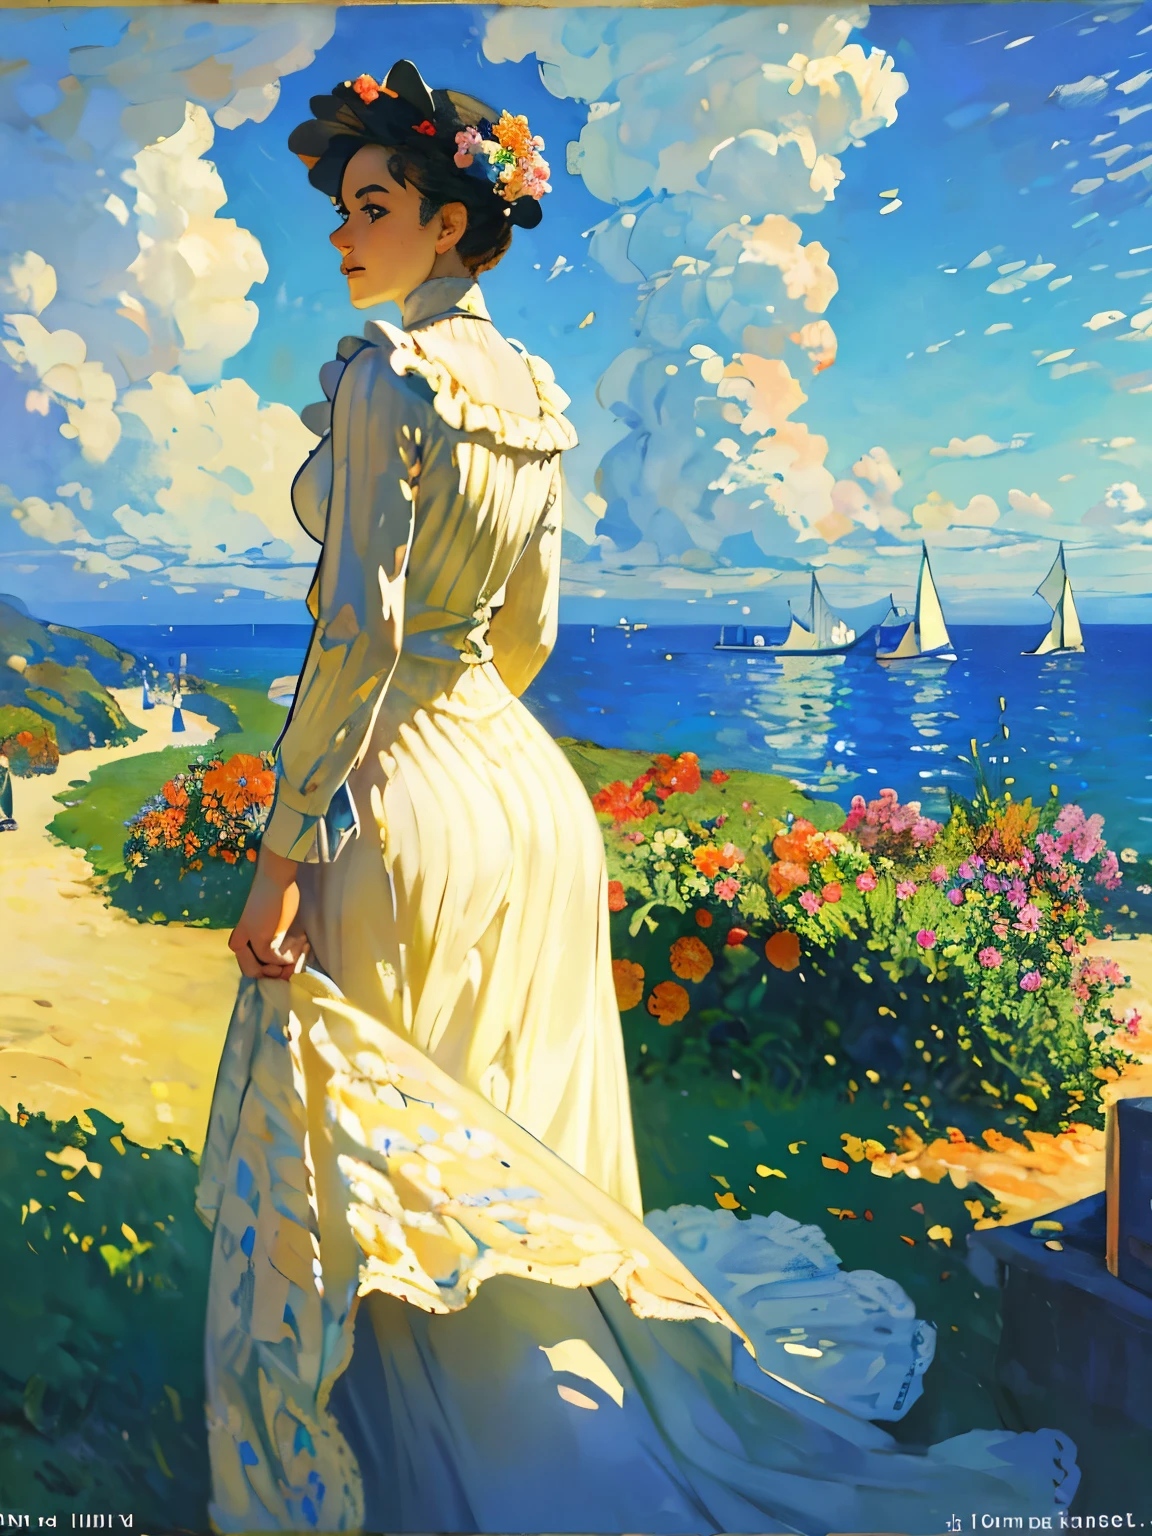 ภูมิทัศน์ภาพวาดสีน้ำมันที่สวยงามของหมู่เกาะคะเนรีในสไตล์ของ Claude Monet, ศิลปะอย่างเป็นทางการ, อิมเพรสชันนิสม์、ส้มหั่นบางๆ ลอยอยู่ในชาเย็นบนระเบียงที่หันหน้าไปทางทะเล、 ลมฤดูร้อนพัดผ่านทะเลและหาดทราย.、 ฉันคิดถึงหนุ่มๆ, นักเต้นที่สดใสเต้นอย่างบ้าคลั่ง.
